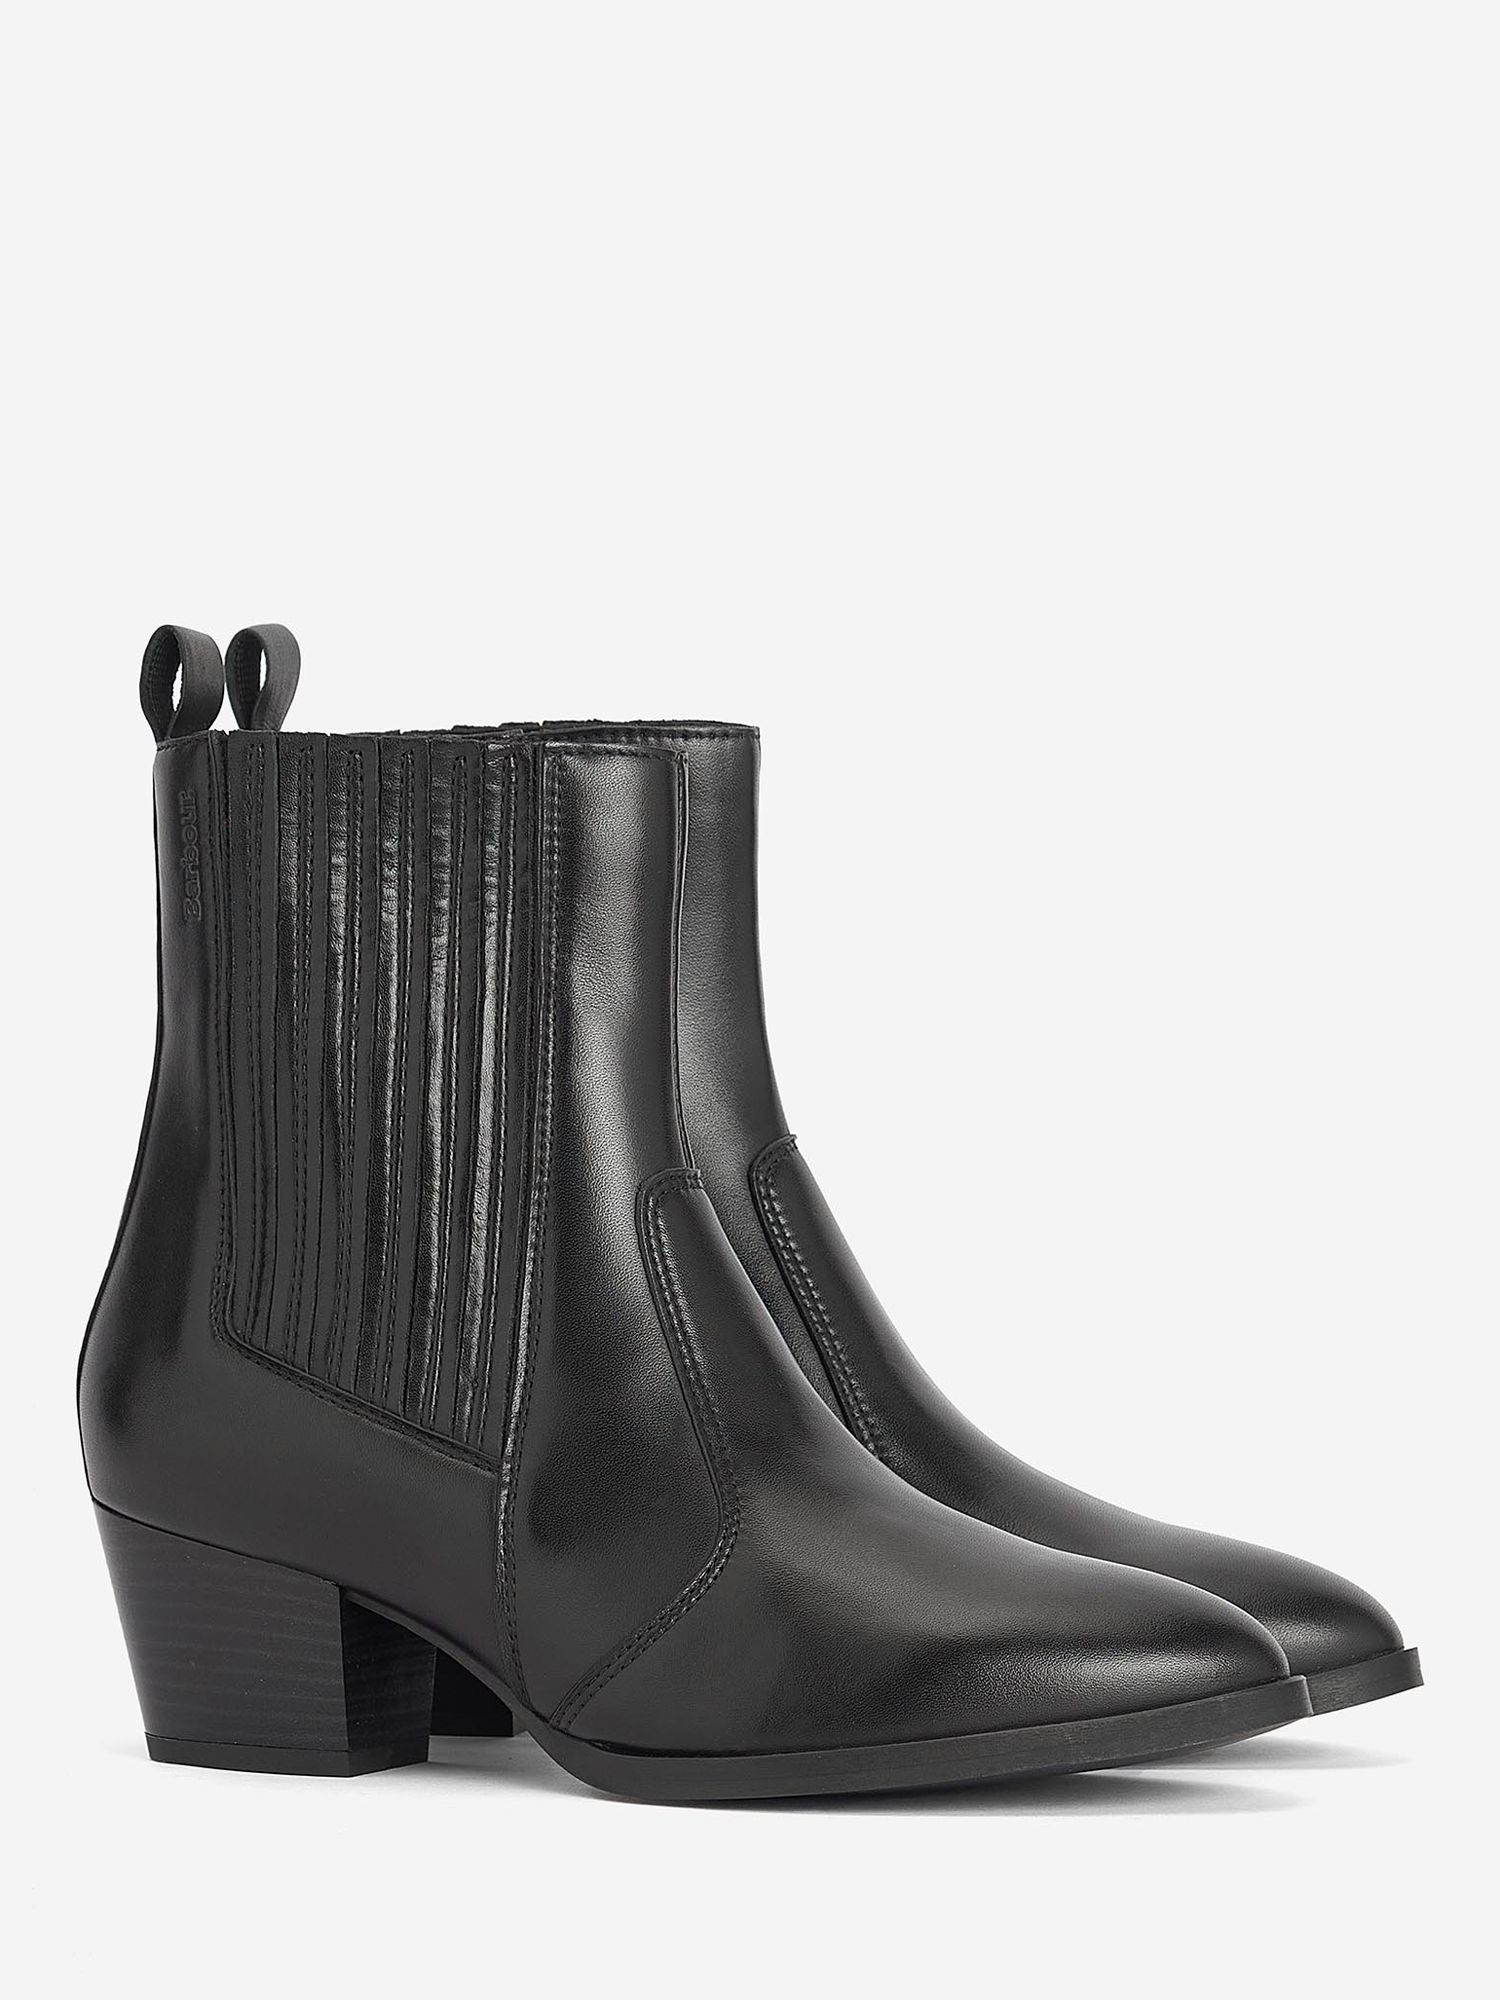 Barbour Elsa Chelsea Leather Boots, Black, 5